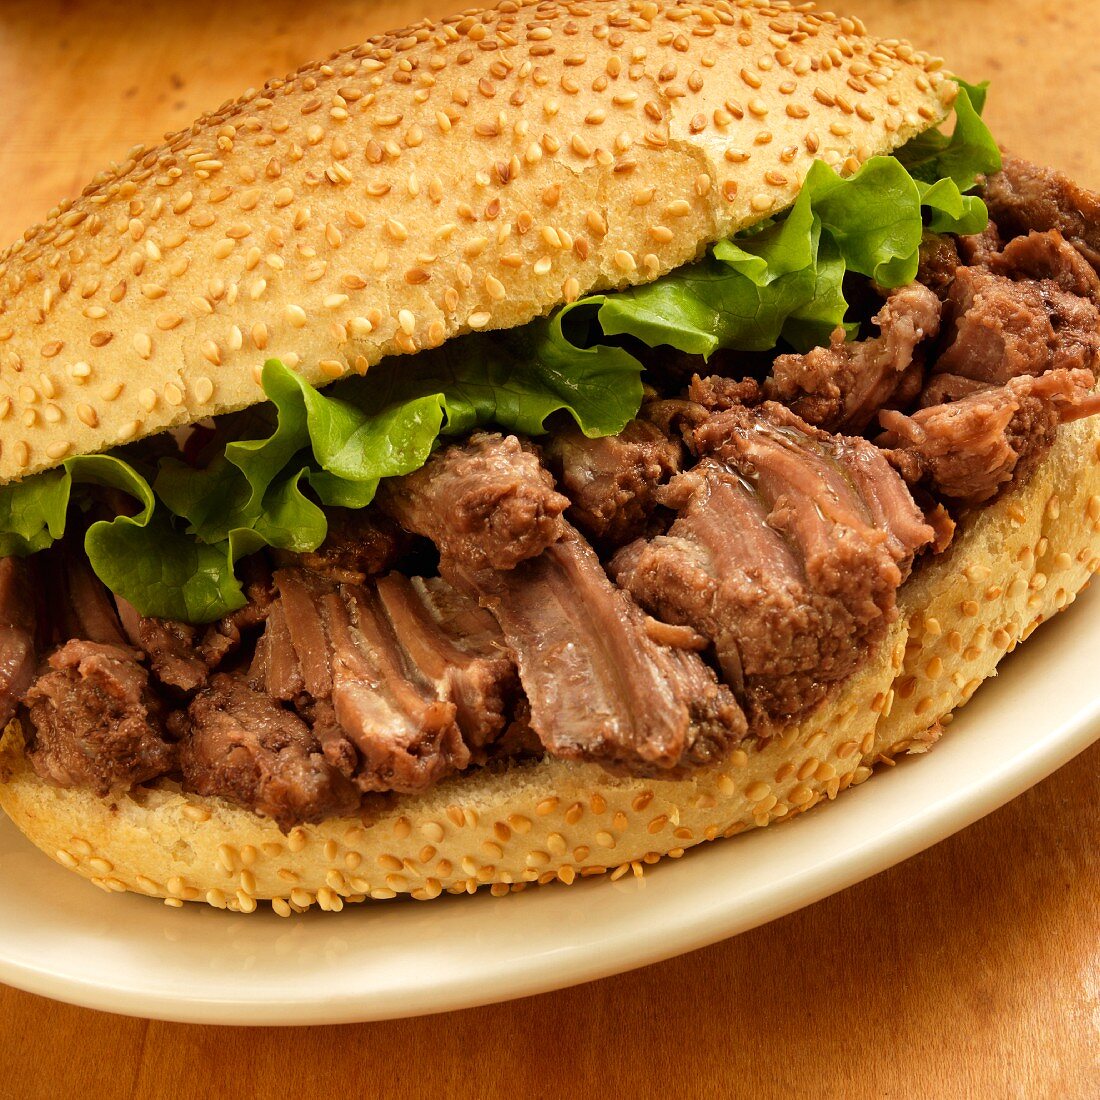 Pot-Roast-Sandwich (Sandwich mit geschmortem Rindfleisch)